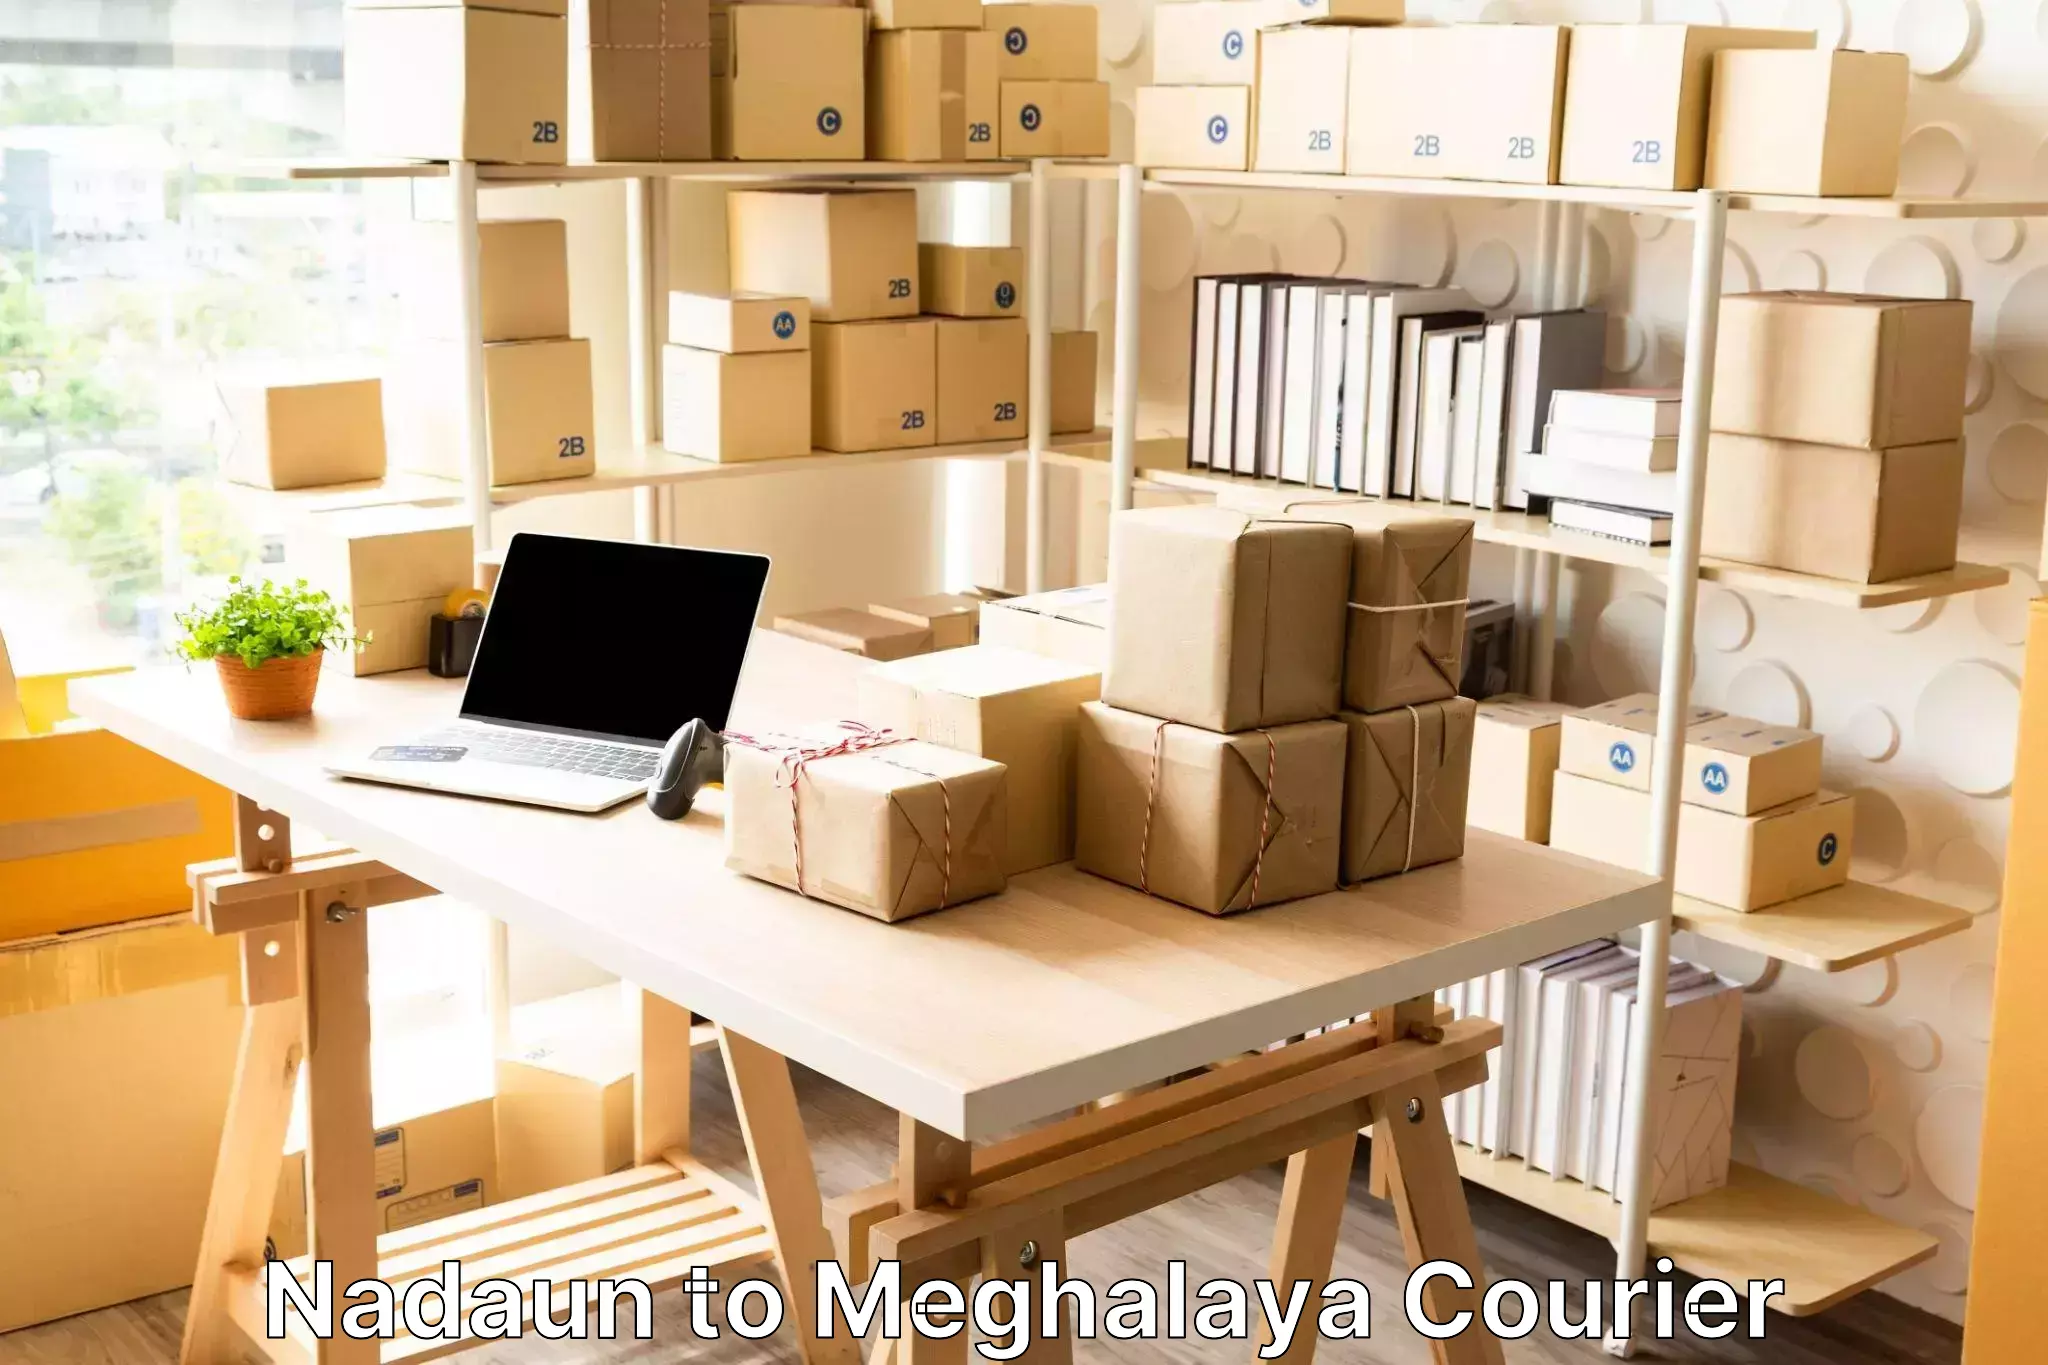 Luggage transport consulting Nadaun to Meghalaya